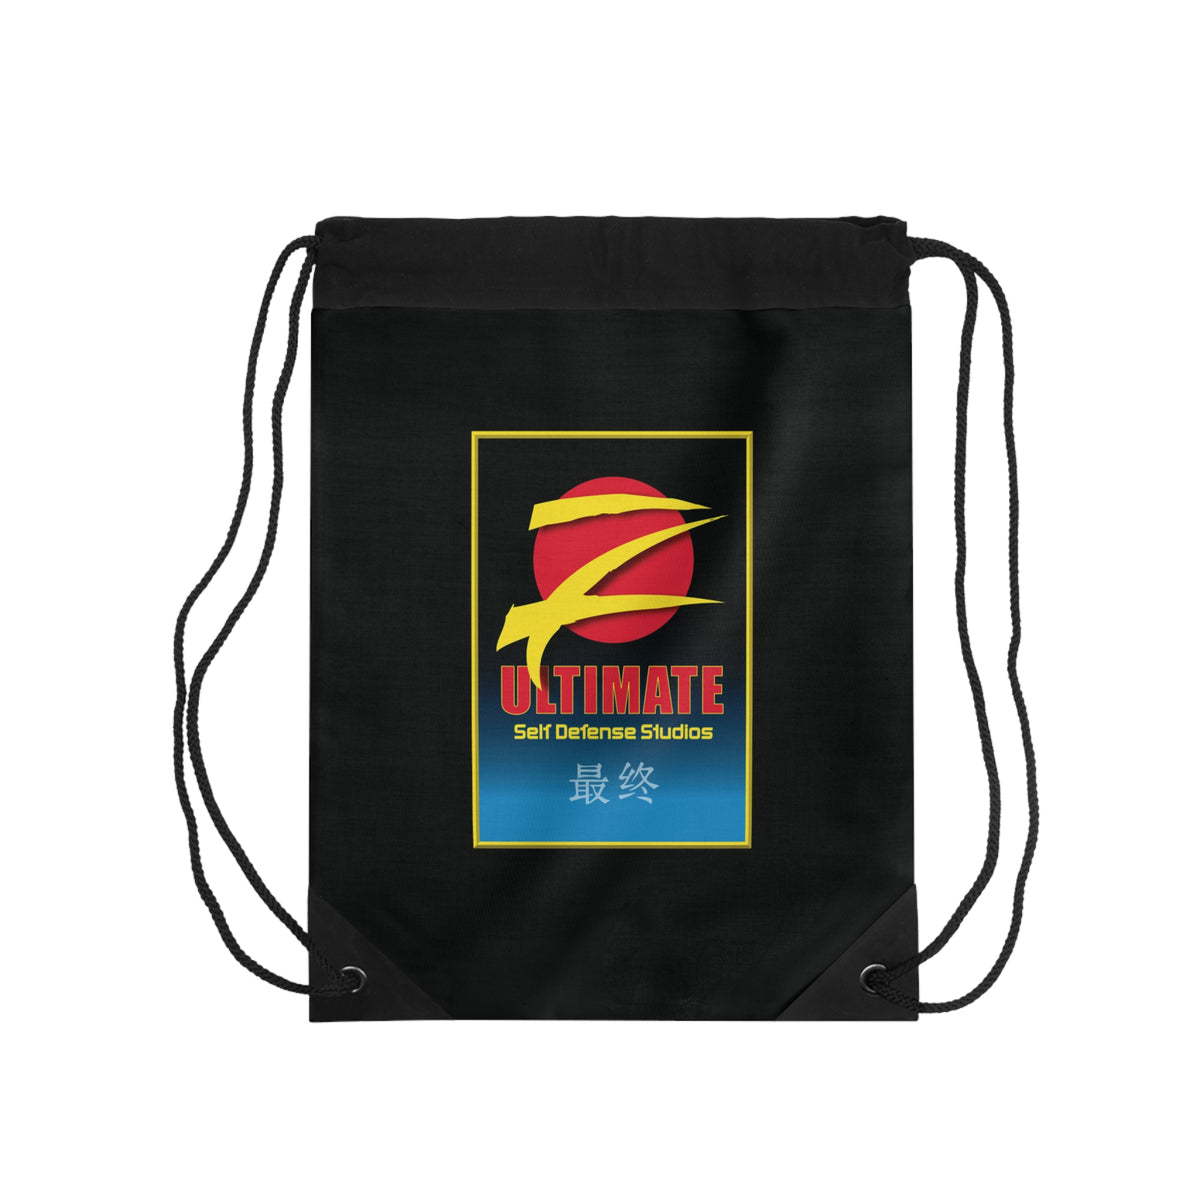 Z-Ultimate Black Drawstring Bag